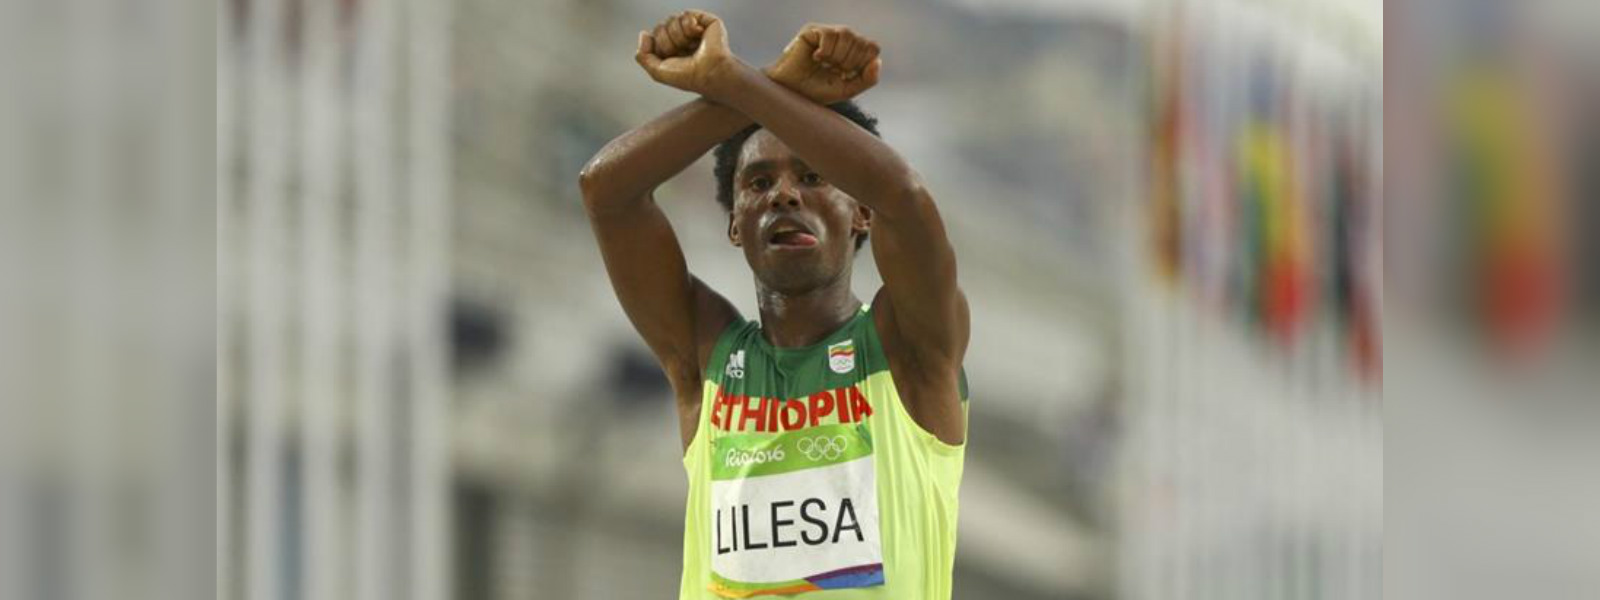 Exiled Ethiopian Olympic runner returns home 